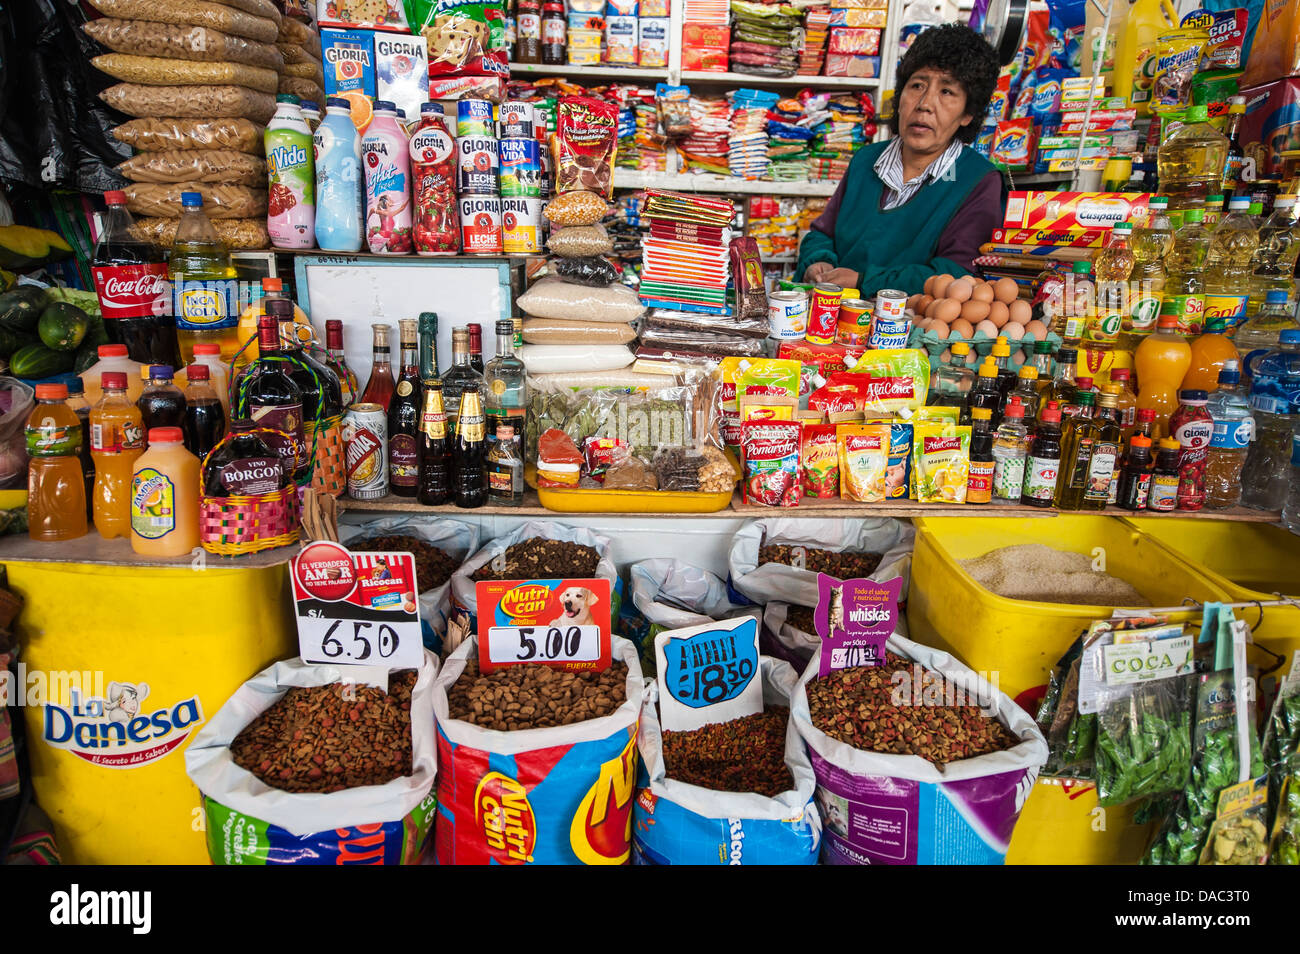 Inca donna fornitore di generi alimentari tende vende la vendita di alimenti prodotti di grano negozio di stallo al mercato locale nel centro di Cusco, Perù. Foto Stock